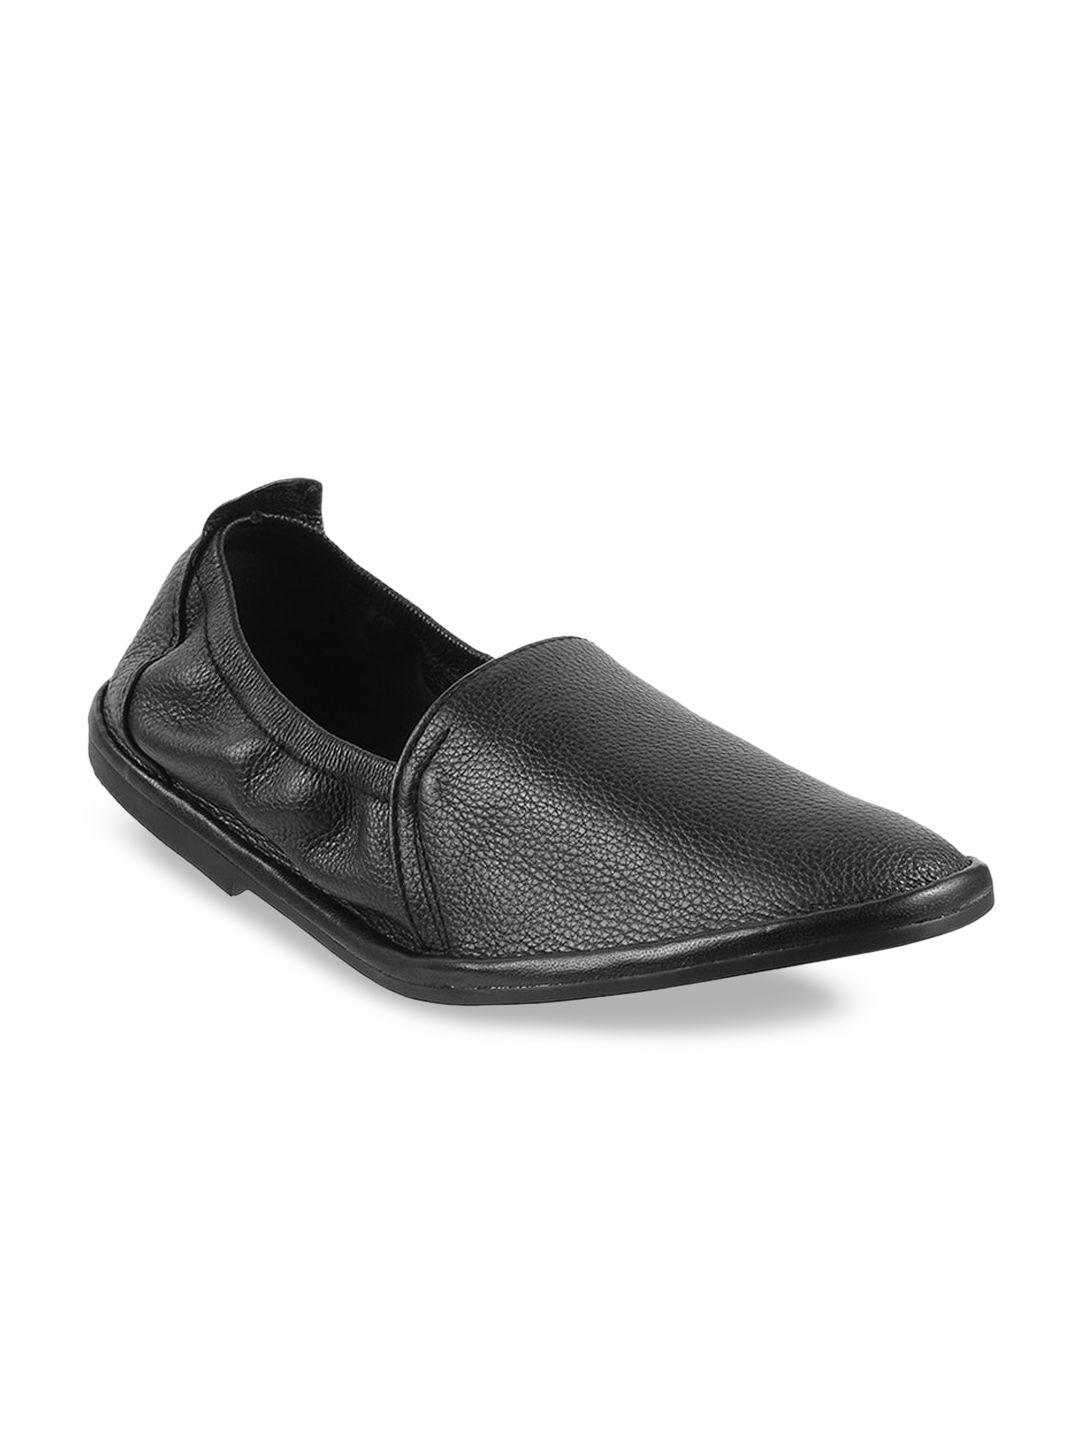 mochi-men-black-solid-formal-loafers-shoes